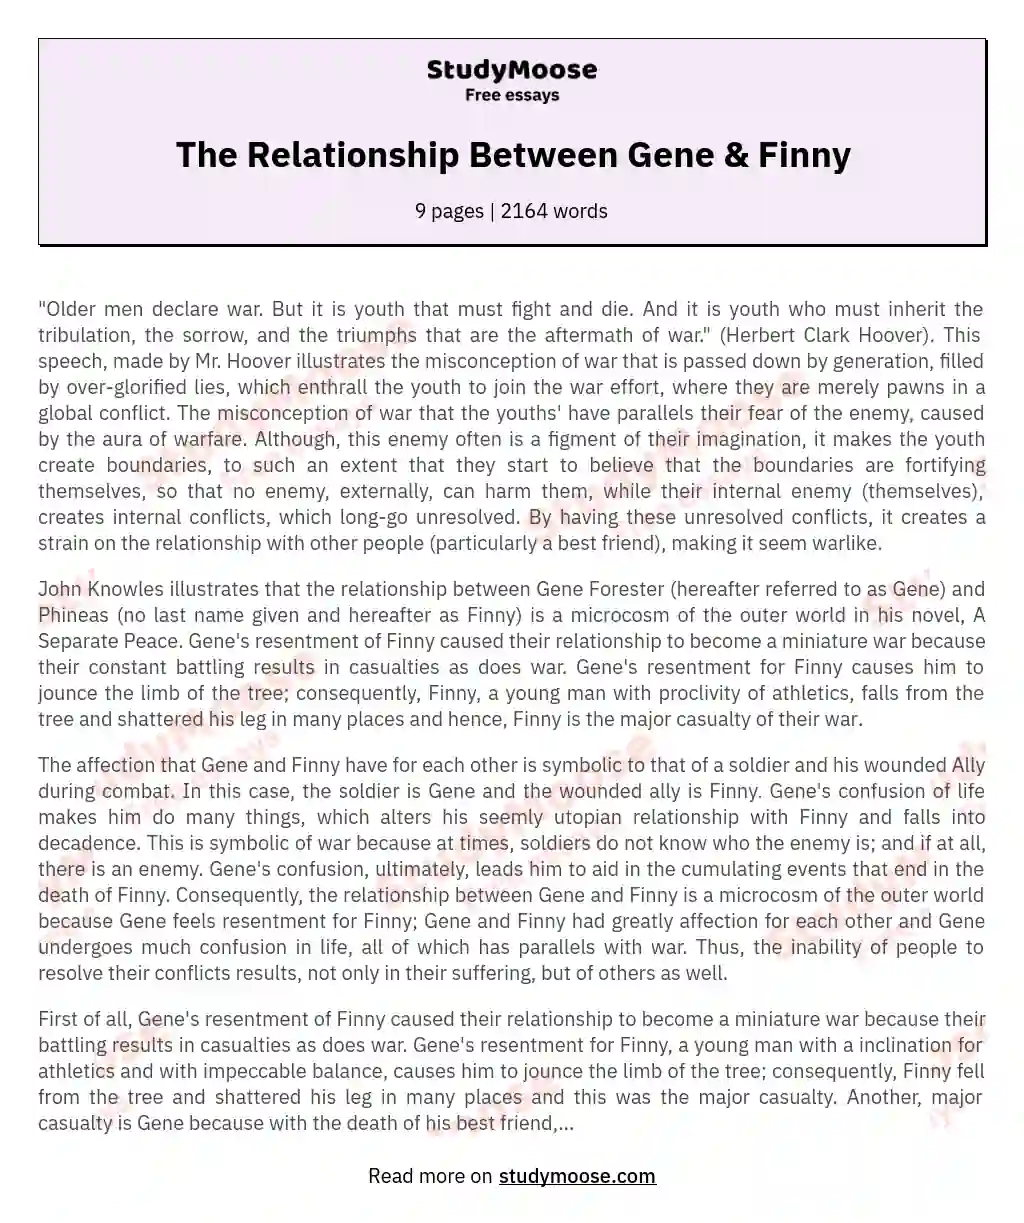 The Relationship Between Gene & Finny essay